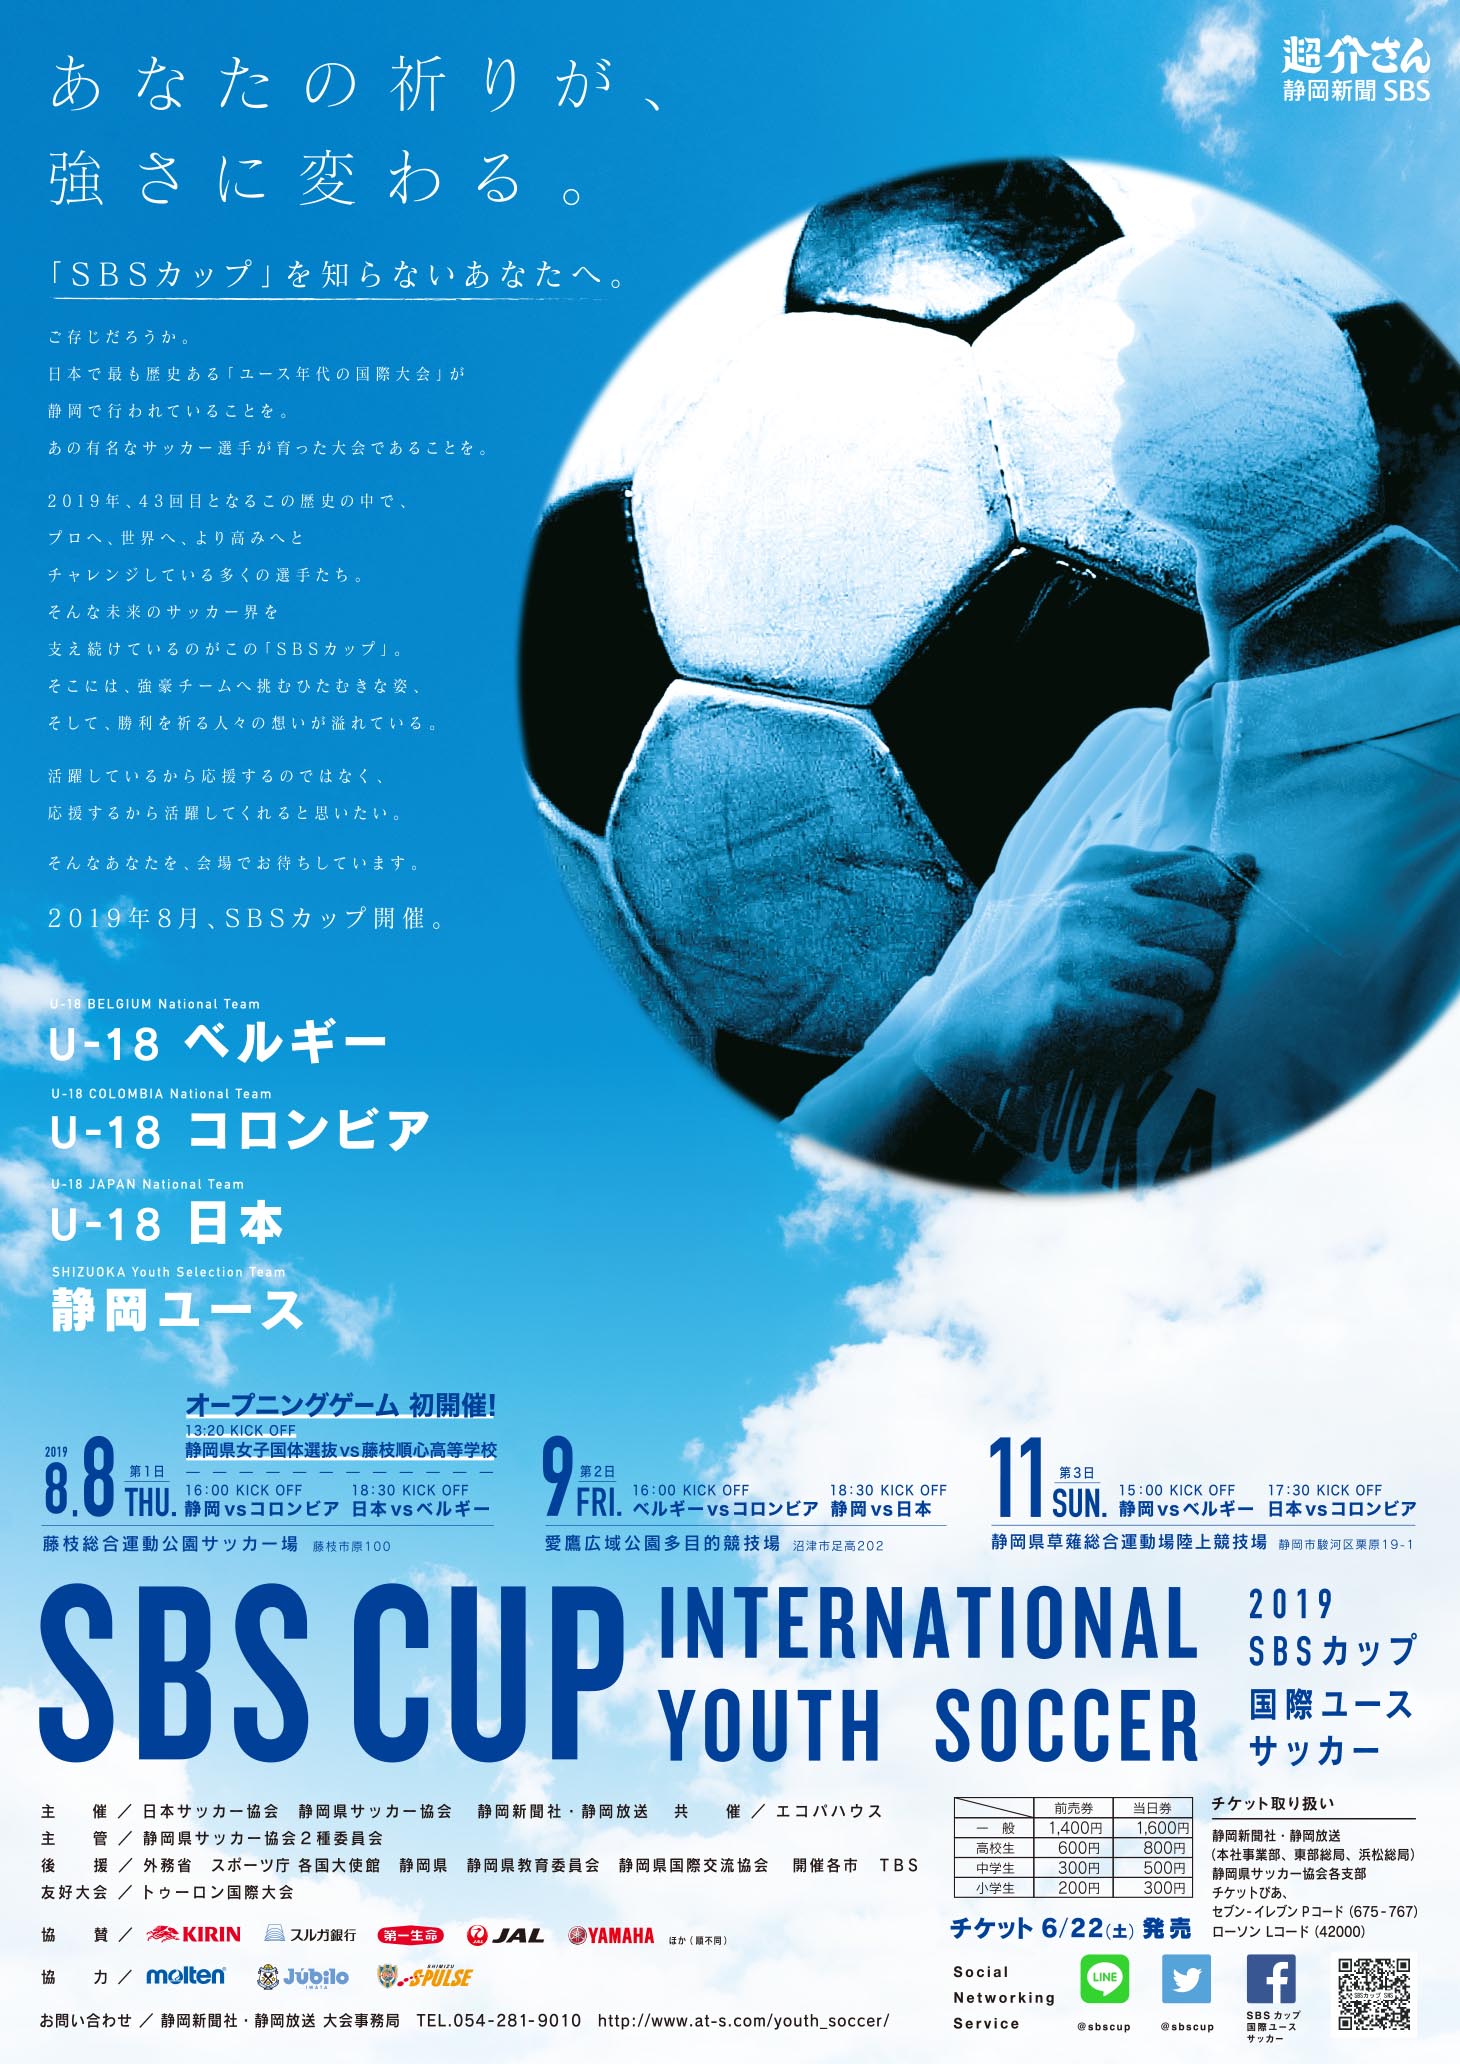 SBSカップ国際ユースサッカー2019ポスター